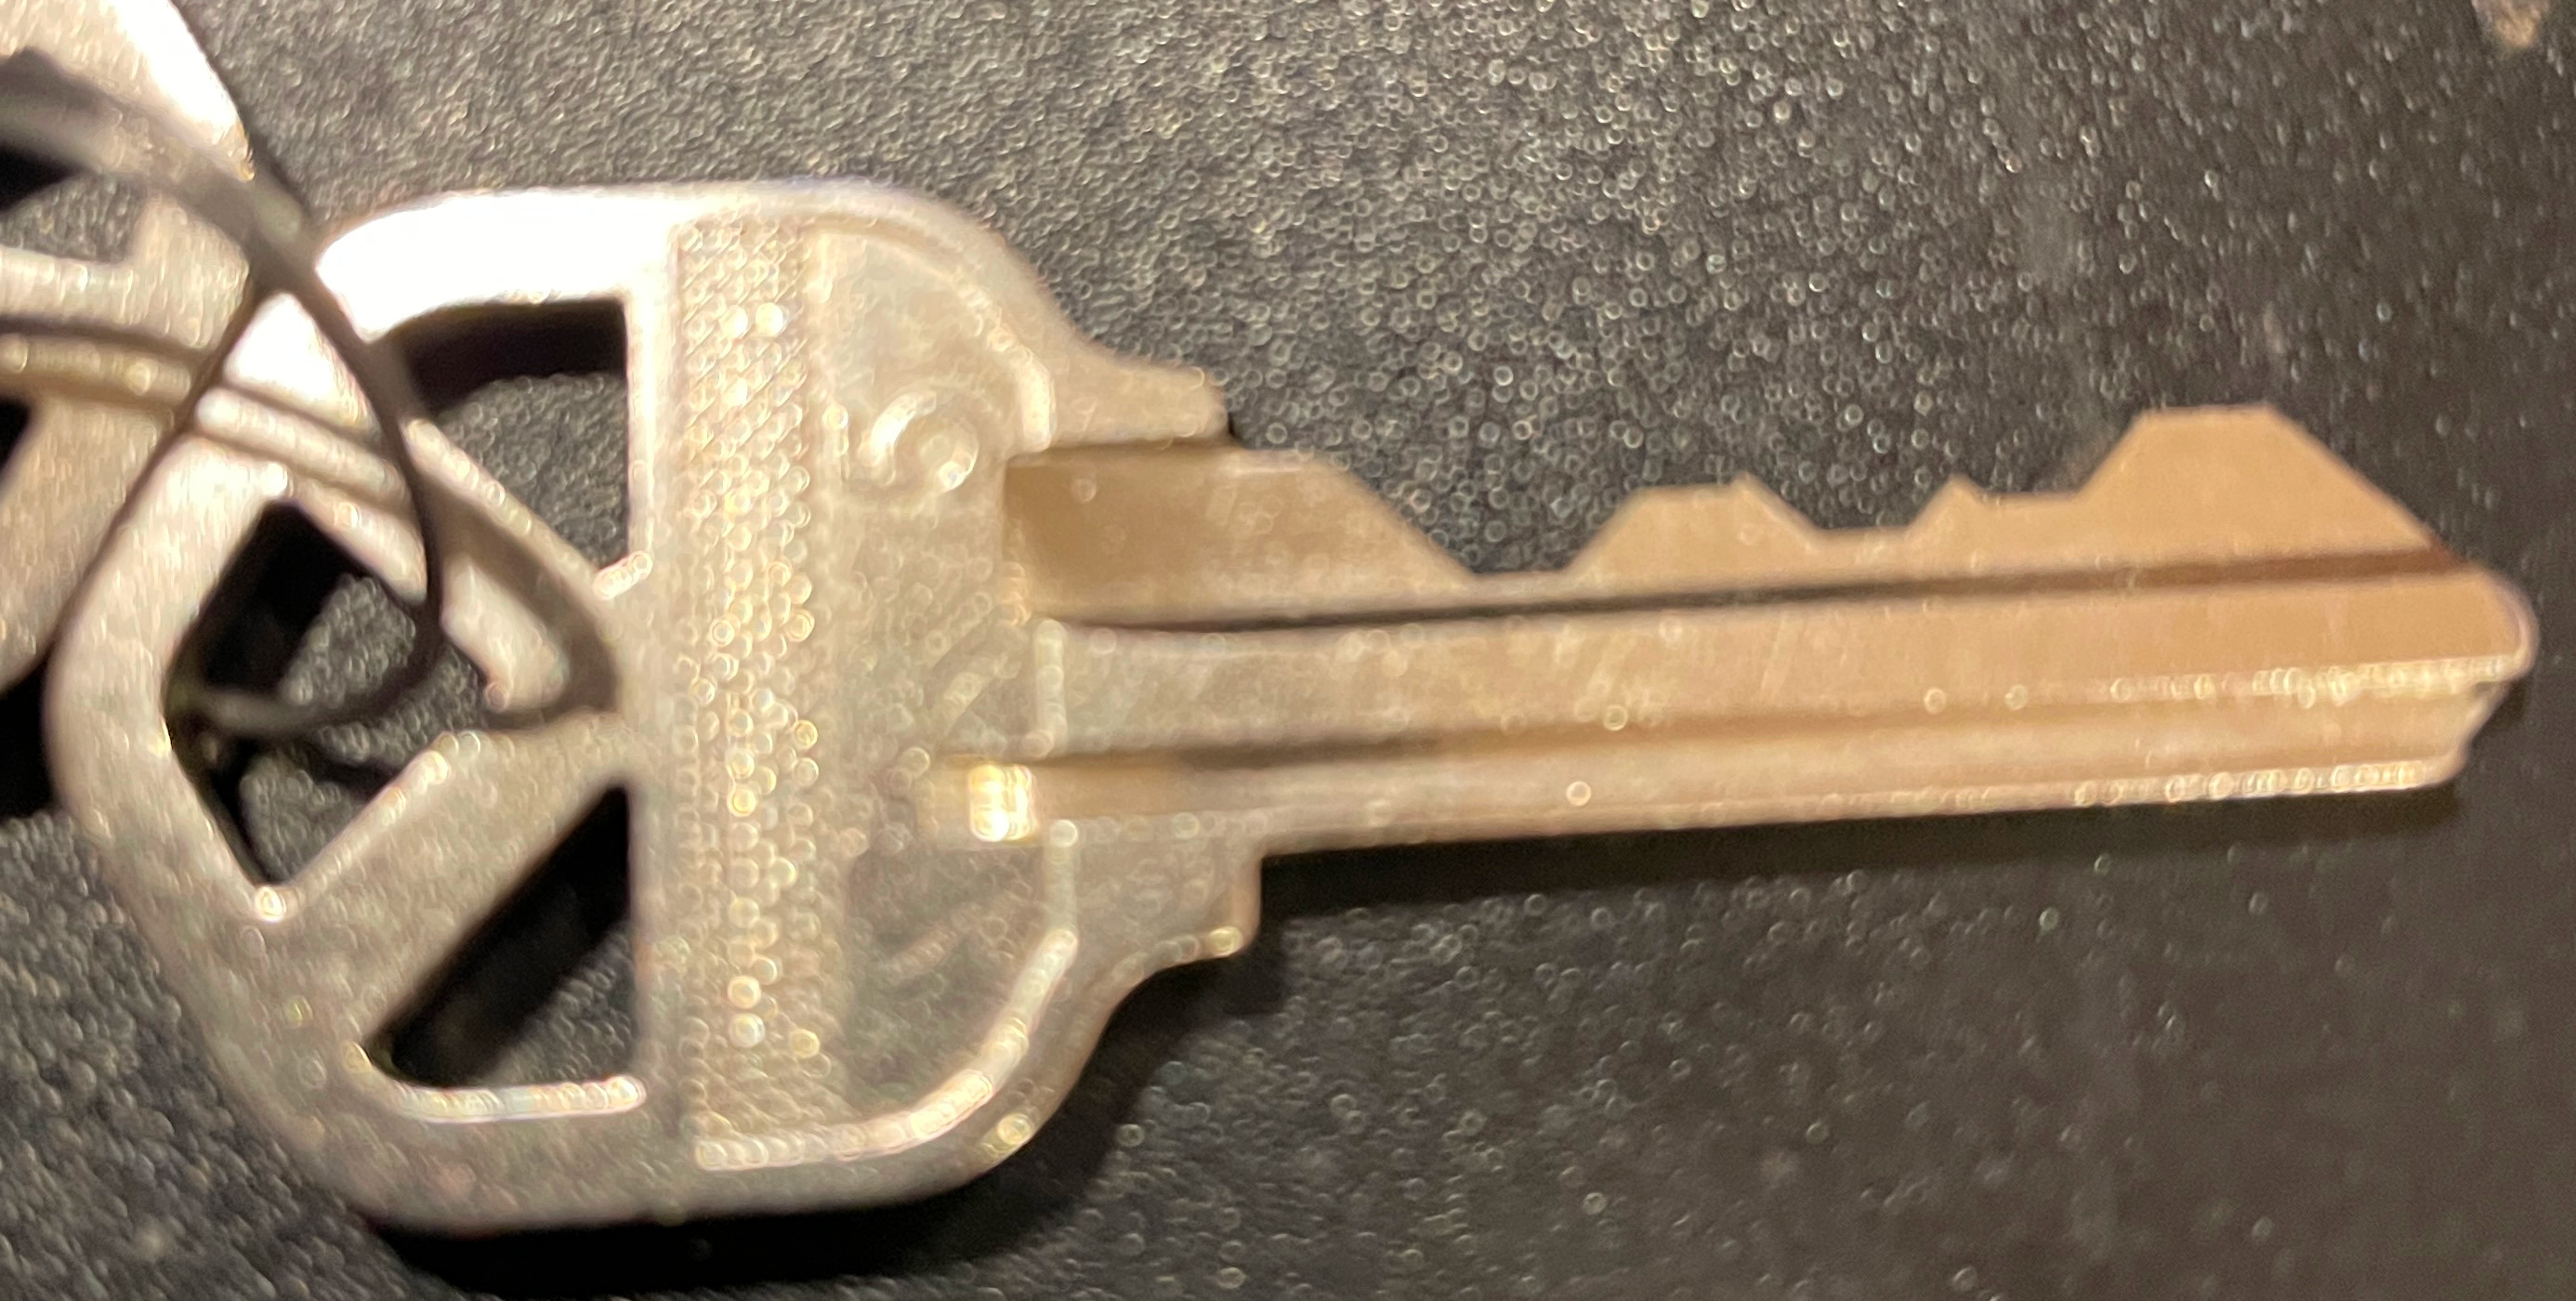 Kwikset door key